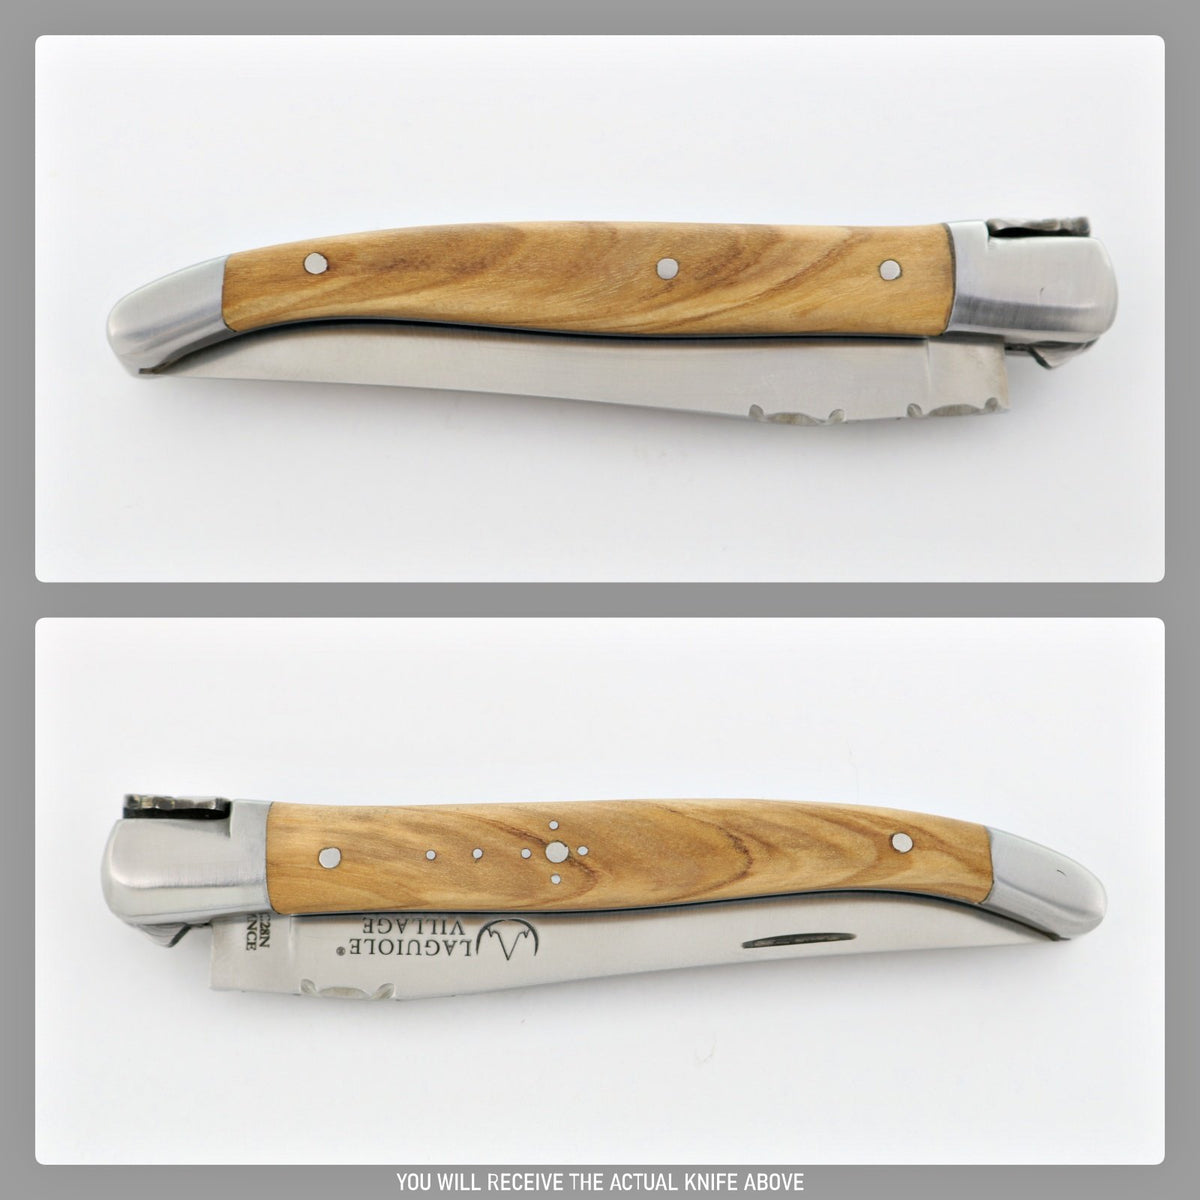 Laguiole Village 10 cm Pocket Knife Olive Wood #17-POCKET KNIFE